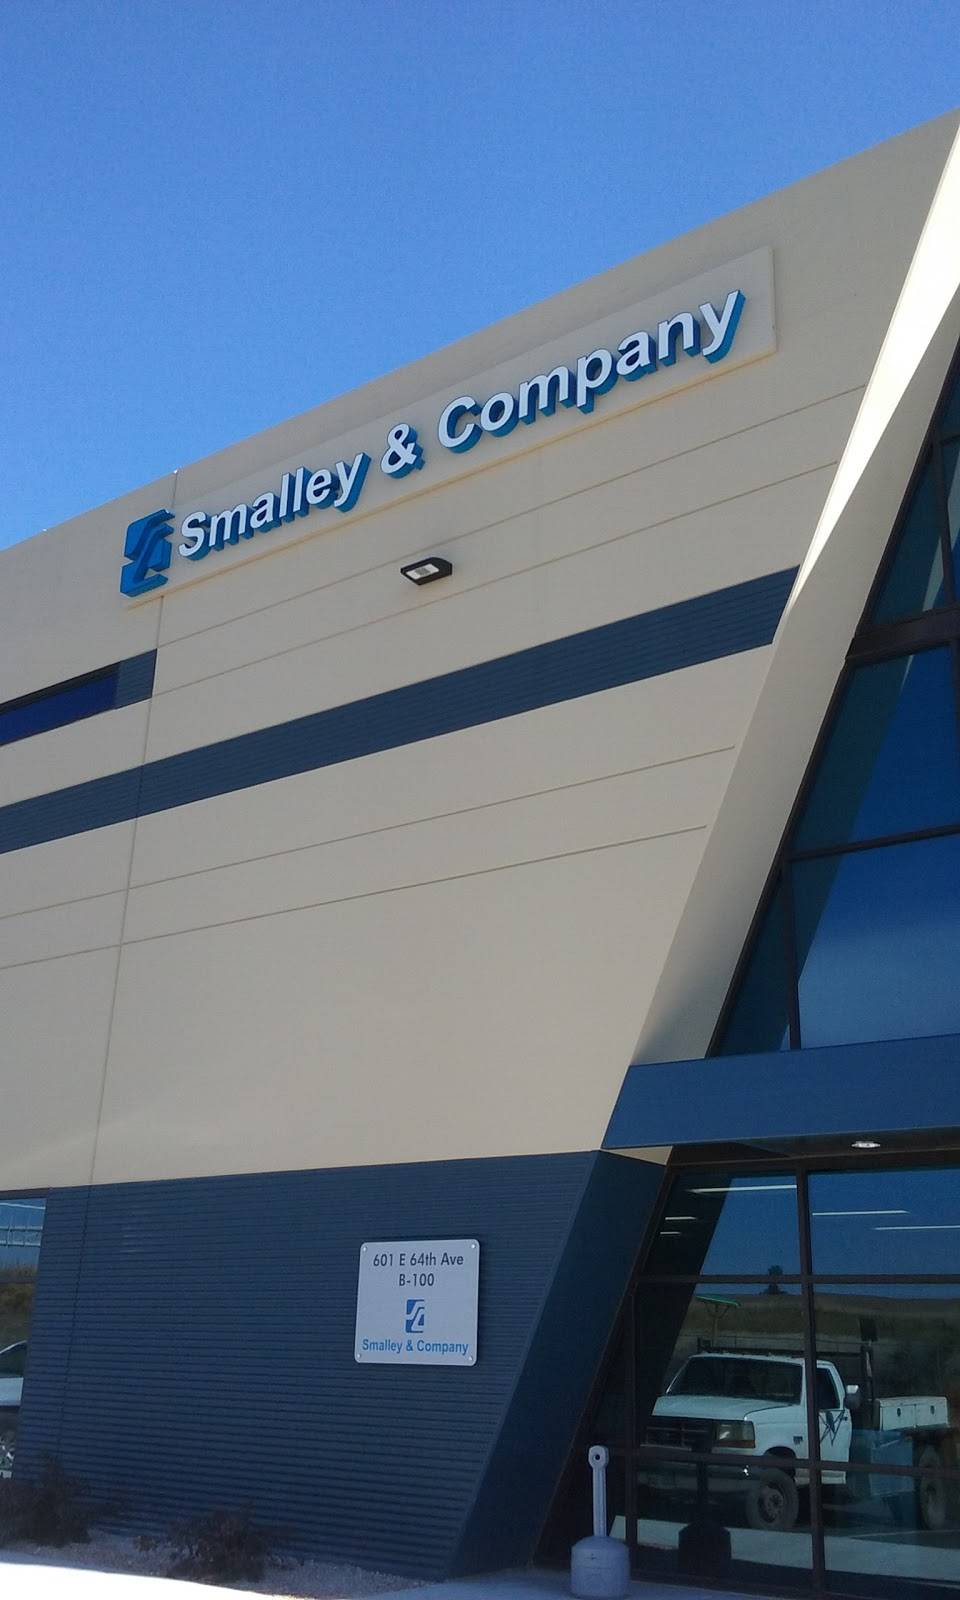 Smalley & Company North | 601 E 64th Ave, Denver, CO 80221 | Phone: (720) 644-6363